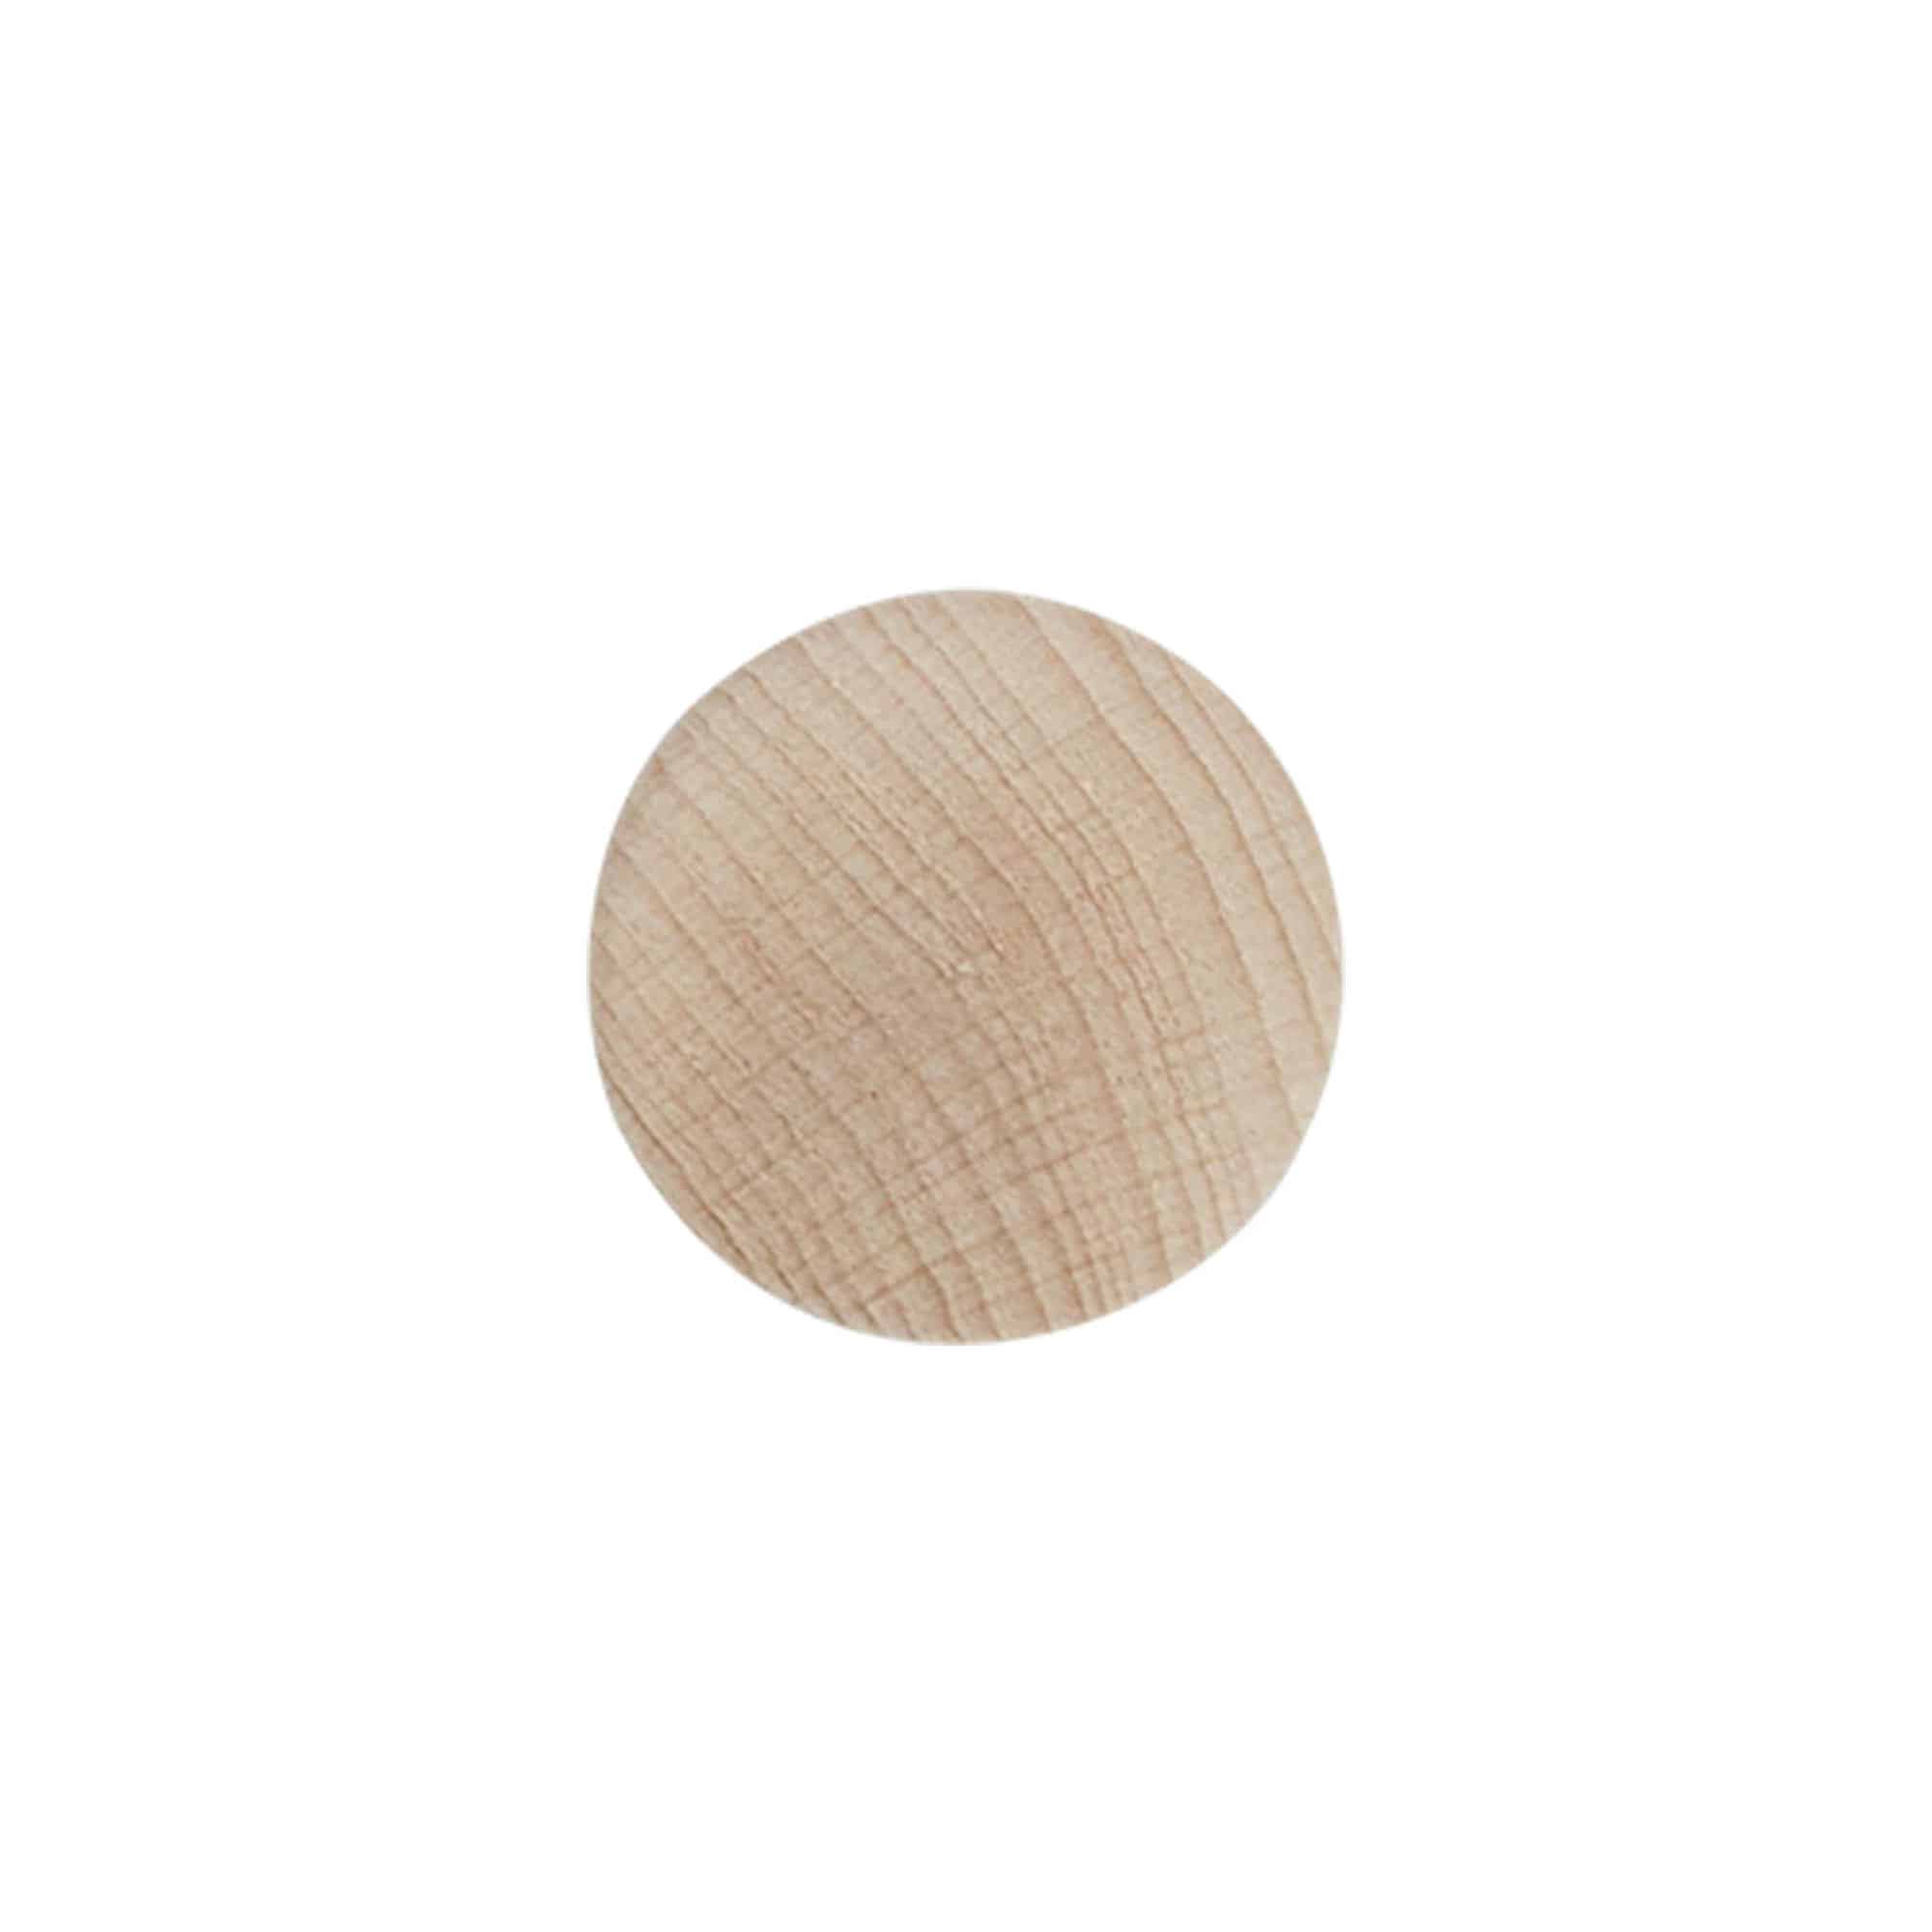 Korek s úchytem 21,5 mm, dřevo, pro uzávěr: korek